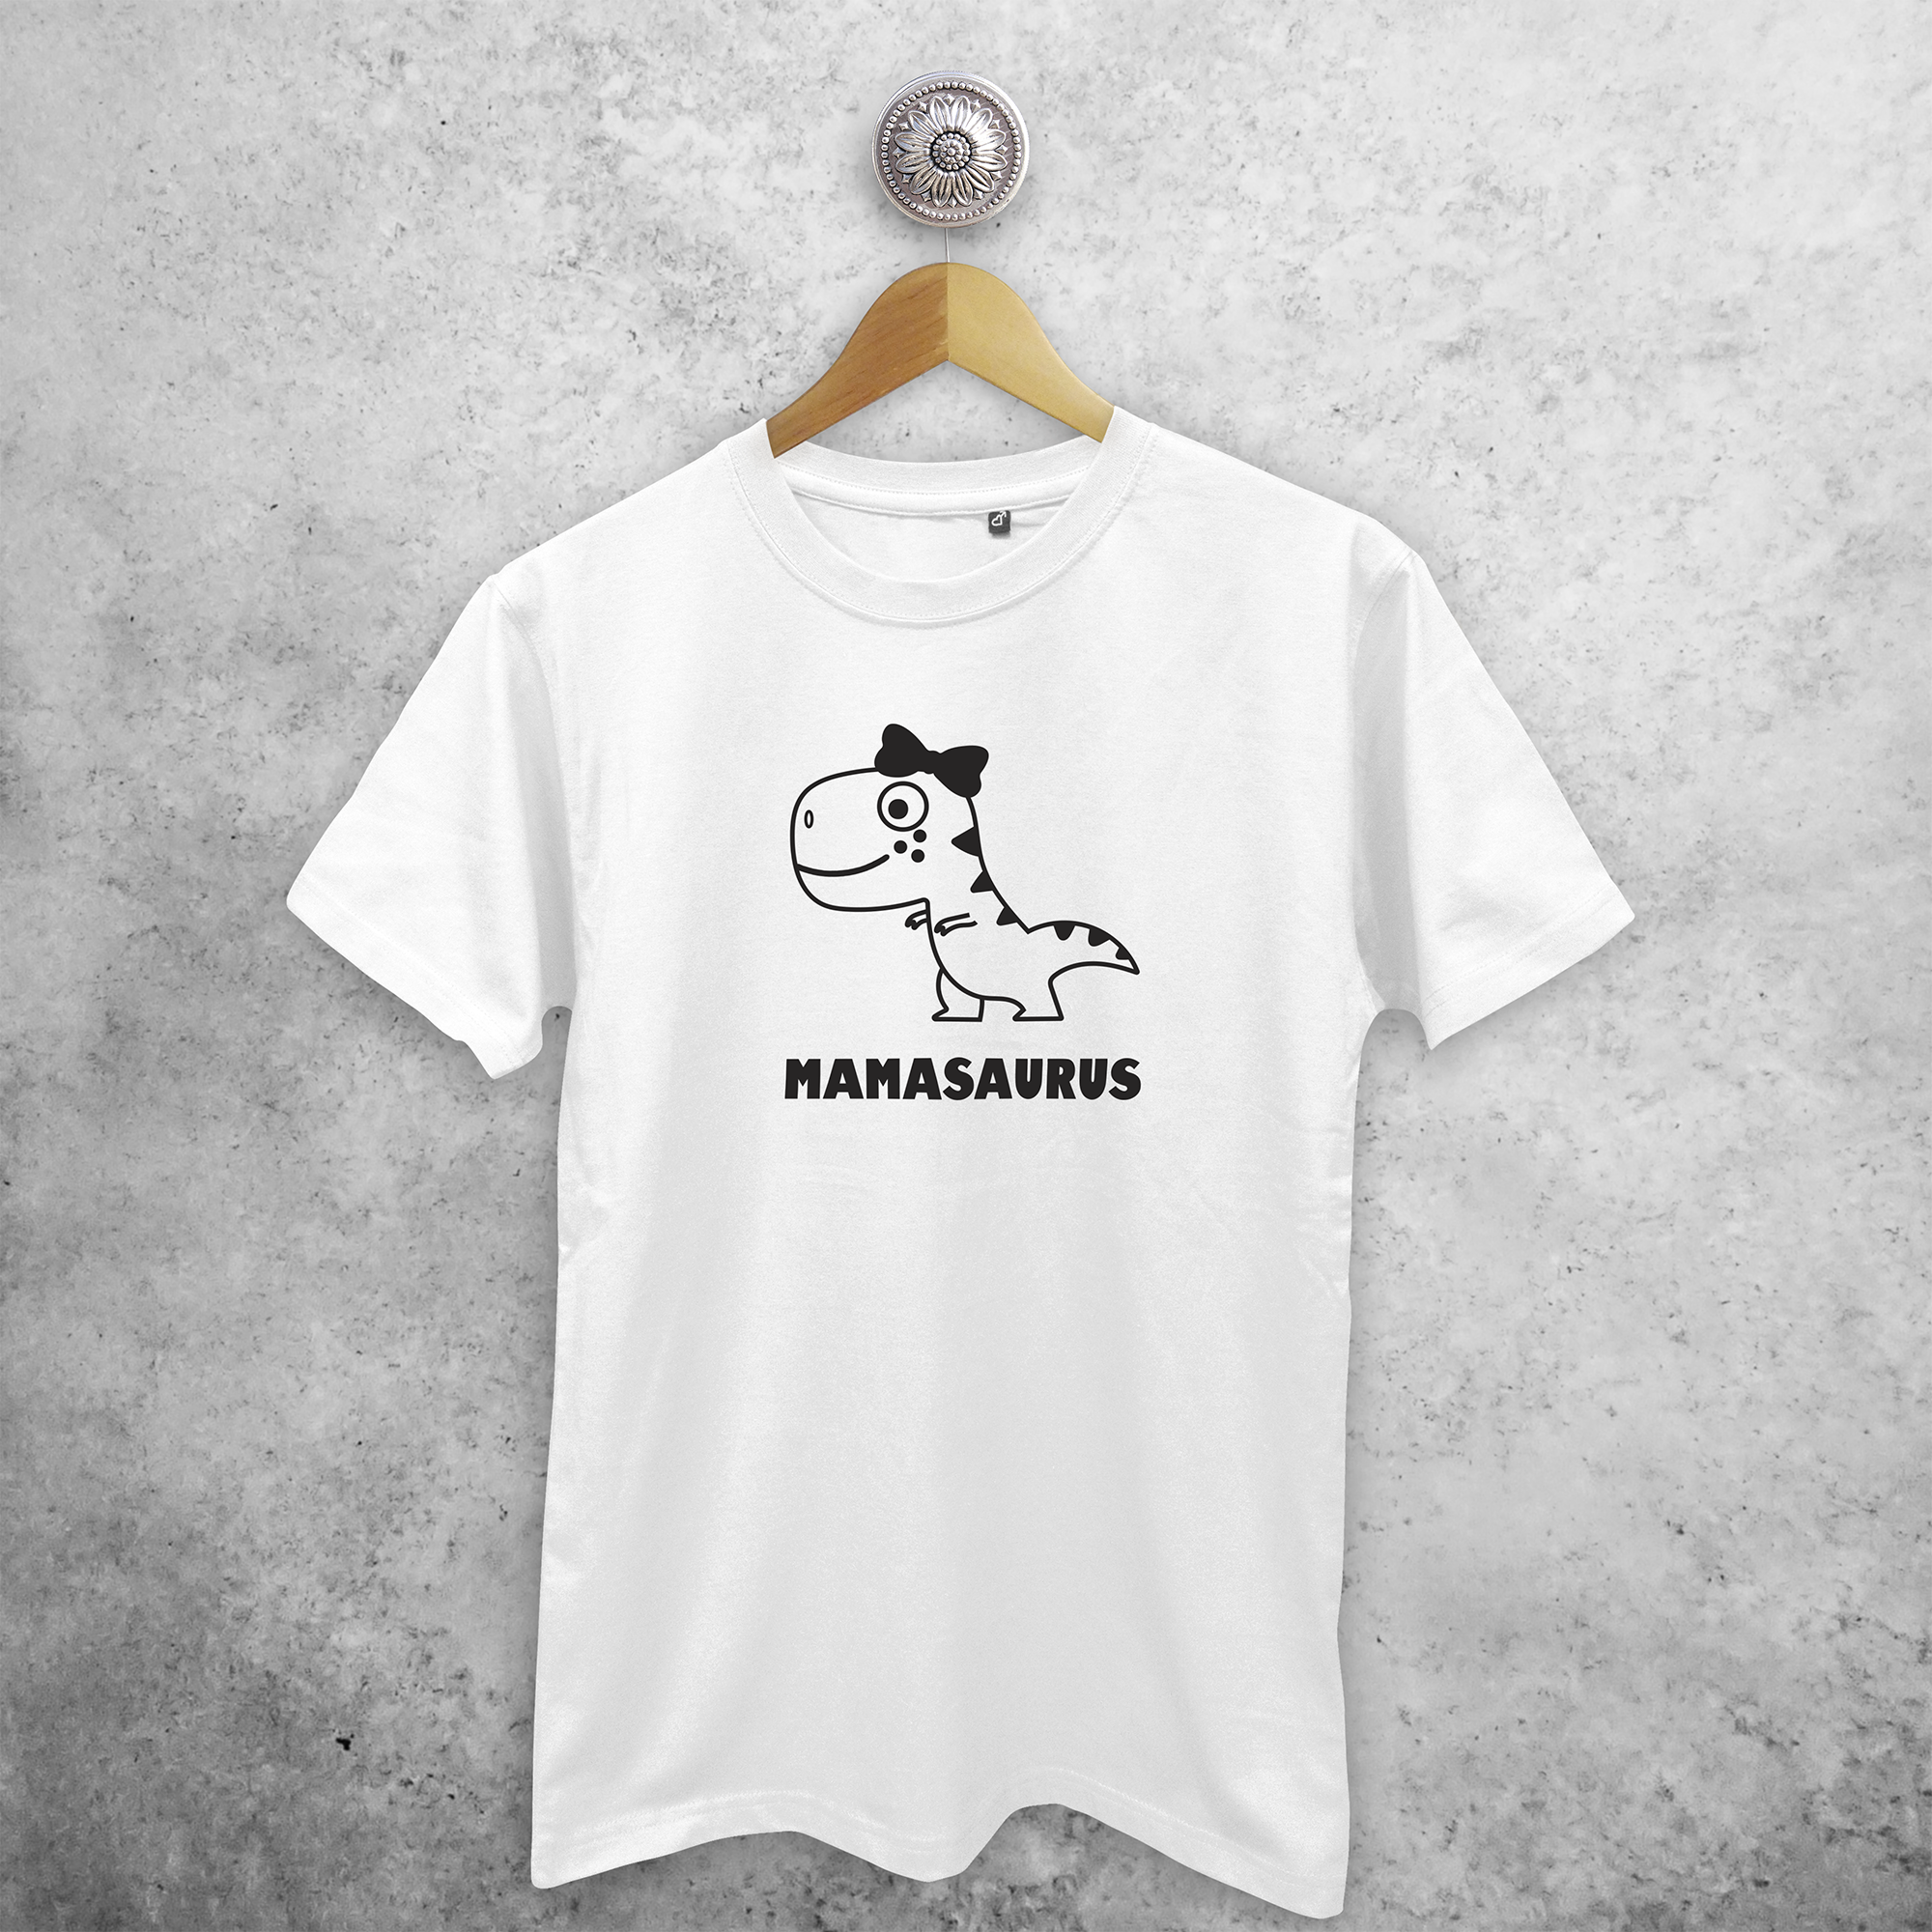 'Mamasaurus' volwassene shirt.